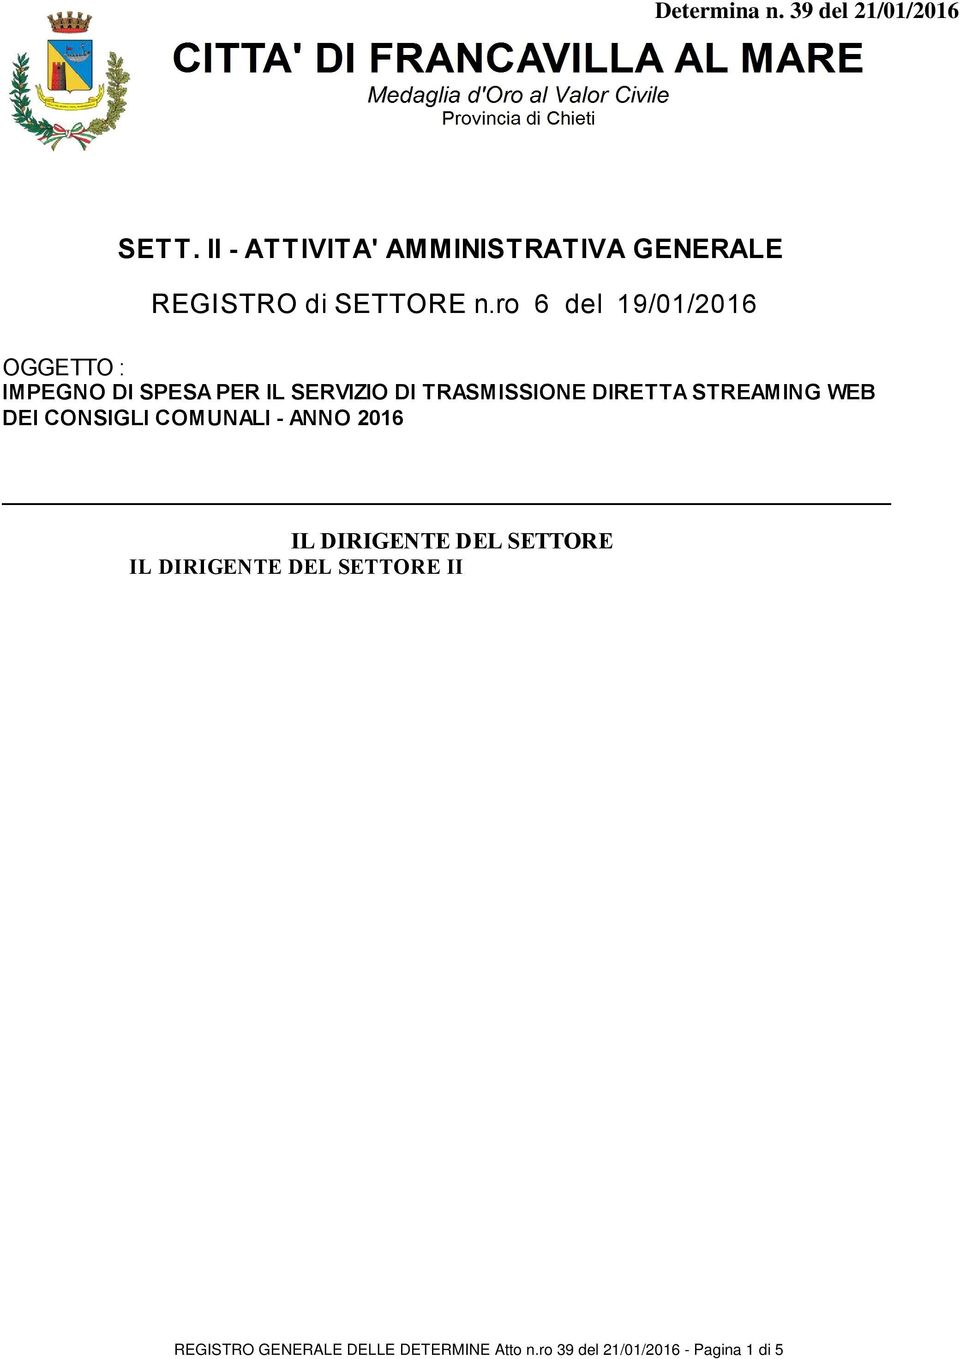 AMMINISTRATIVA GENERALE Premesso : Che con Decreto Sindacale n. 09 del 29.01.2015 protocollo n. 3348, la Dott.